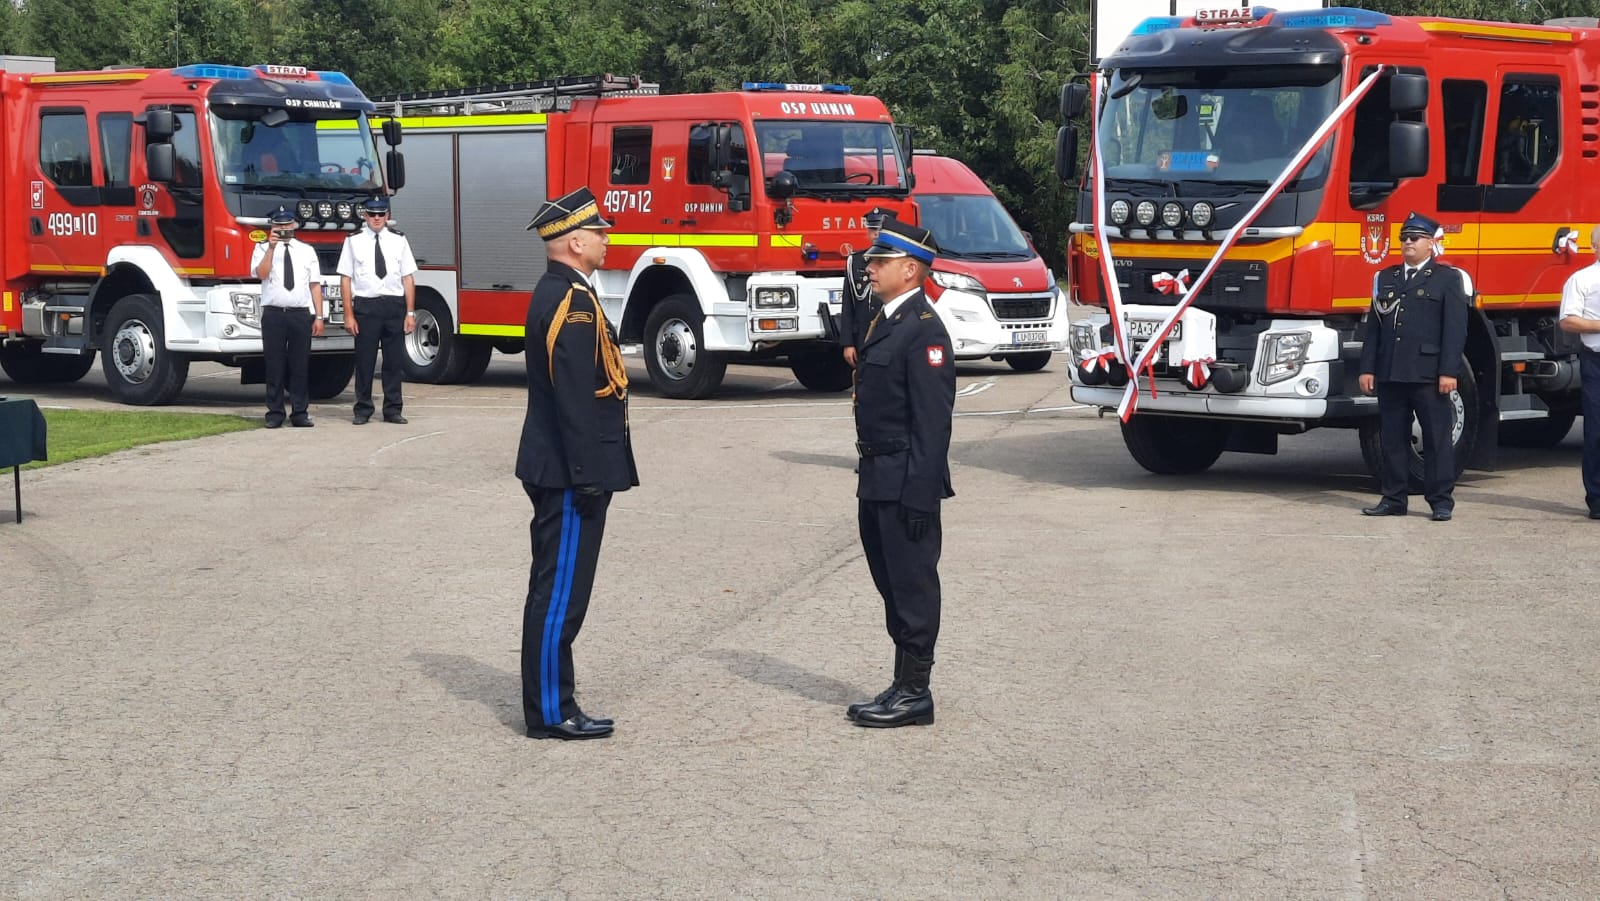 Dwóch strażaków ubranych w mundury wyjściowe stoi na przeciwko siebie. Na drugim planie cztery samochody strażackie, jeden z nich z przodu przewieszony jest biało-czerwoną wstęga. obok samochodów stoi trzech strażaków.